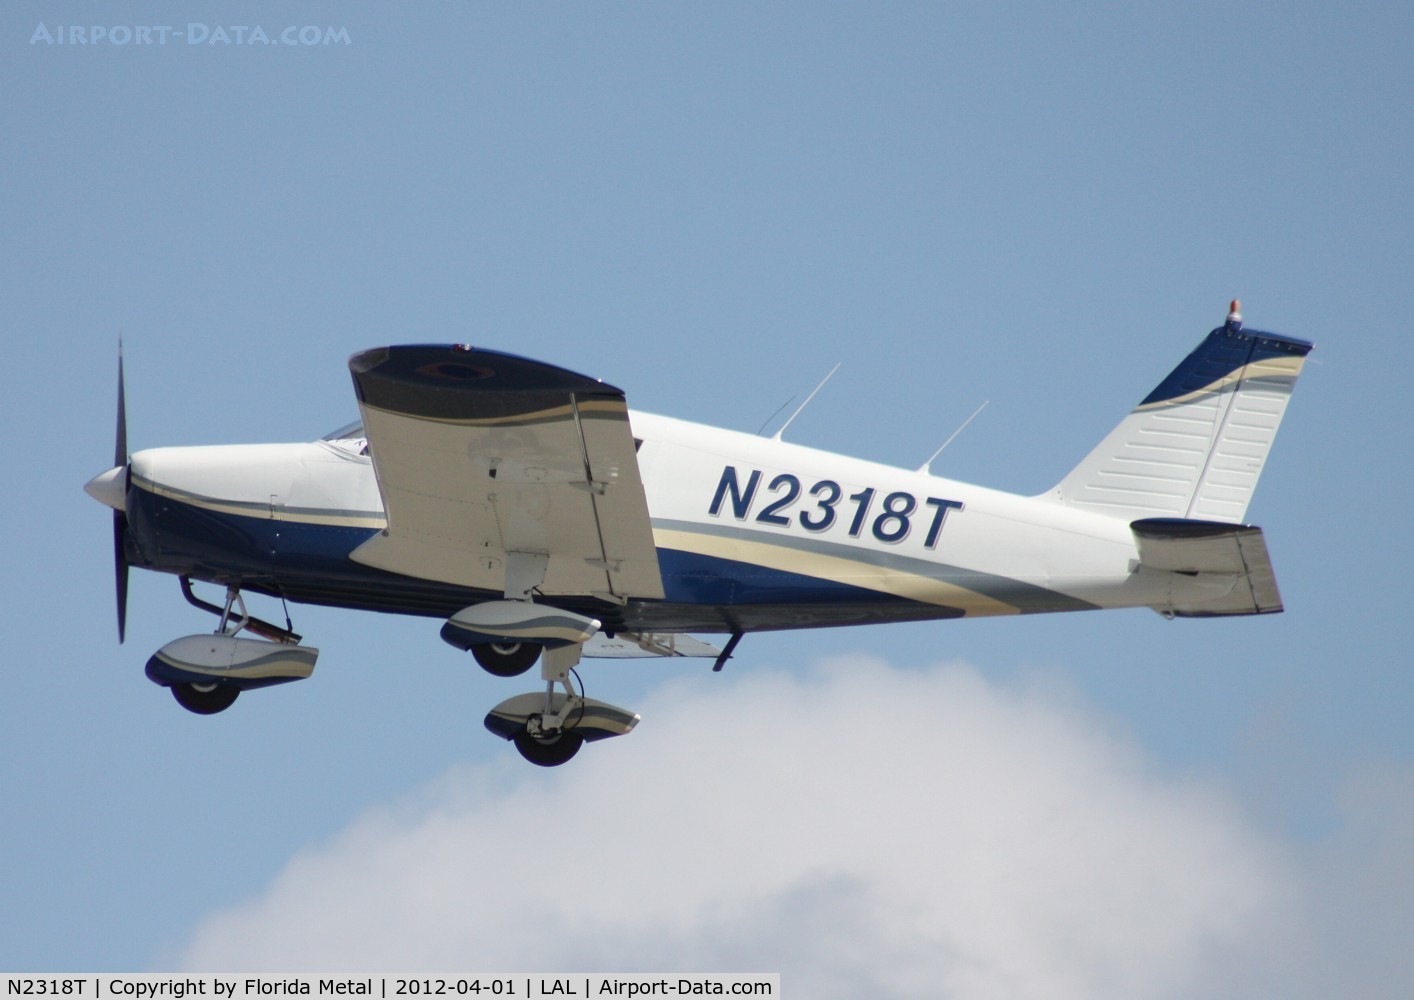 N2318T, 1971 Piper PA-28-140 Cherokee C/N 28-7125567, PA-28-140